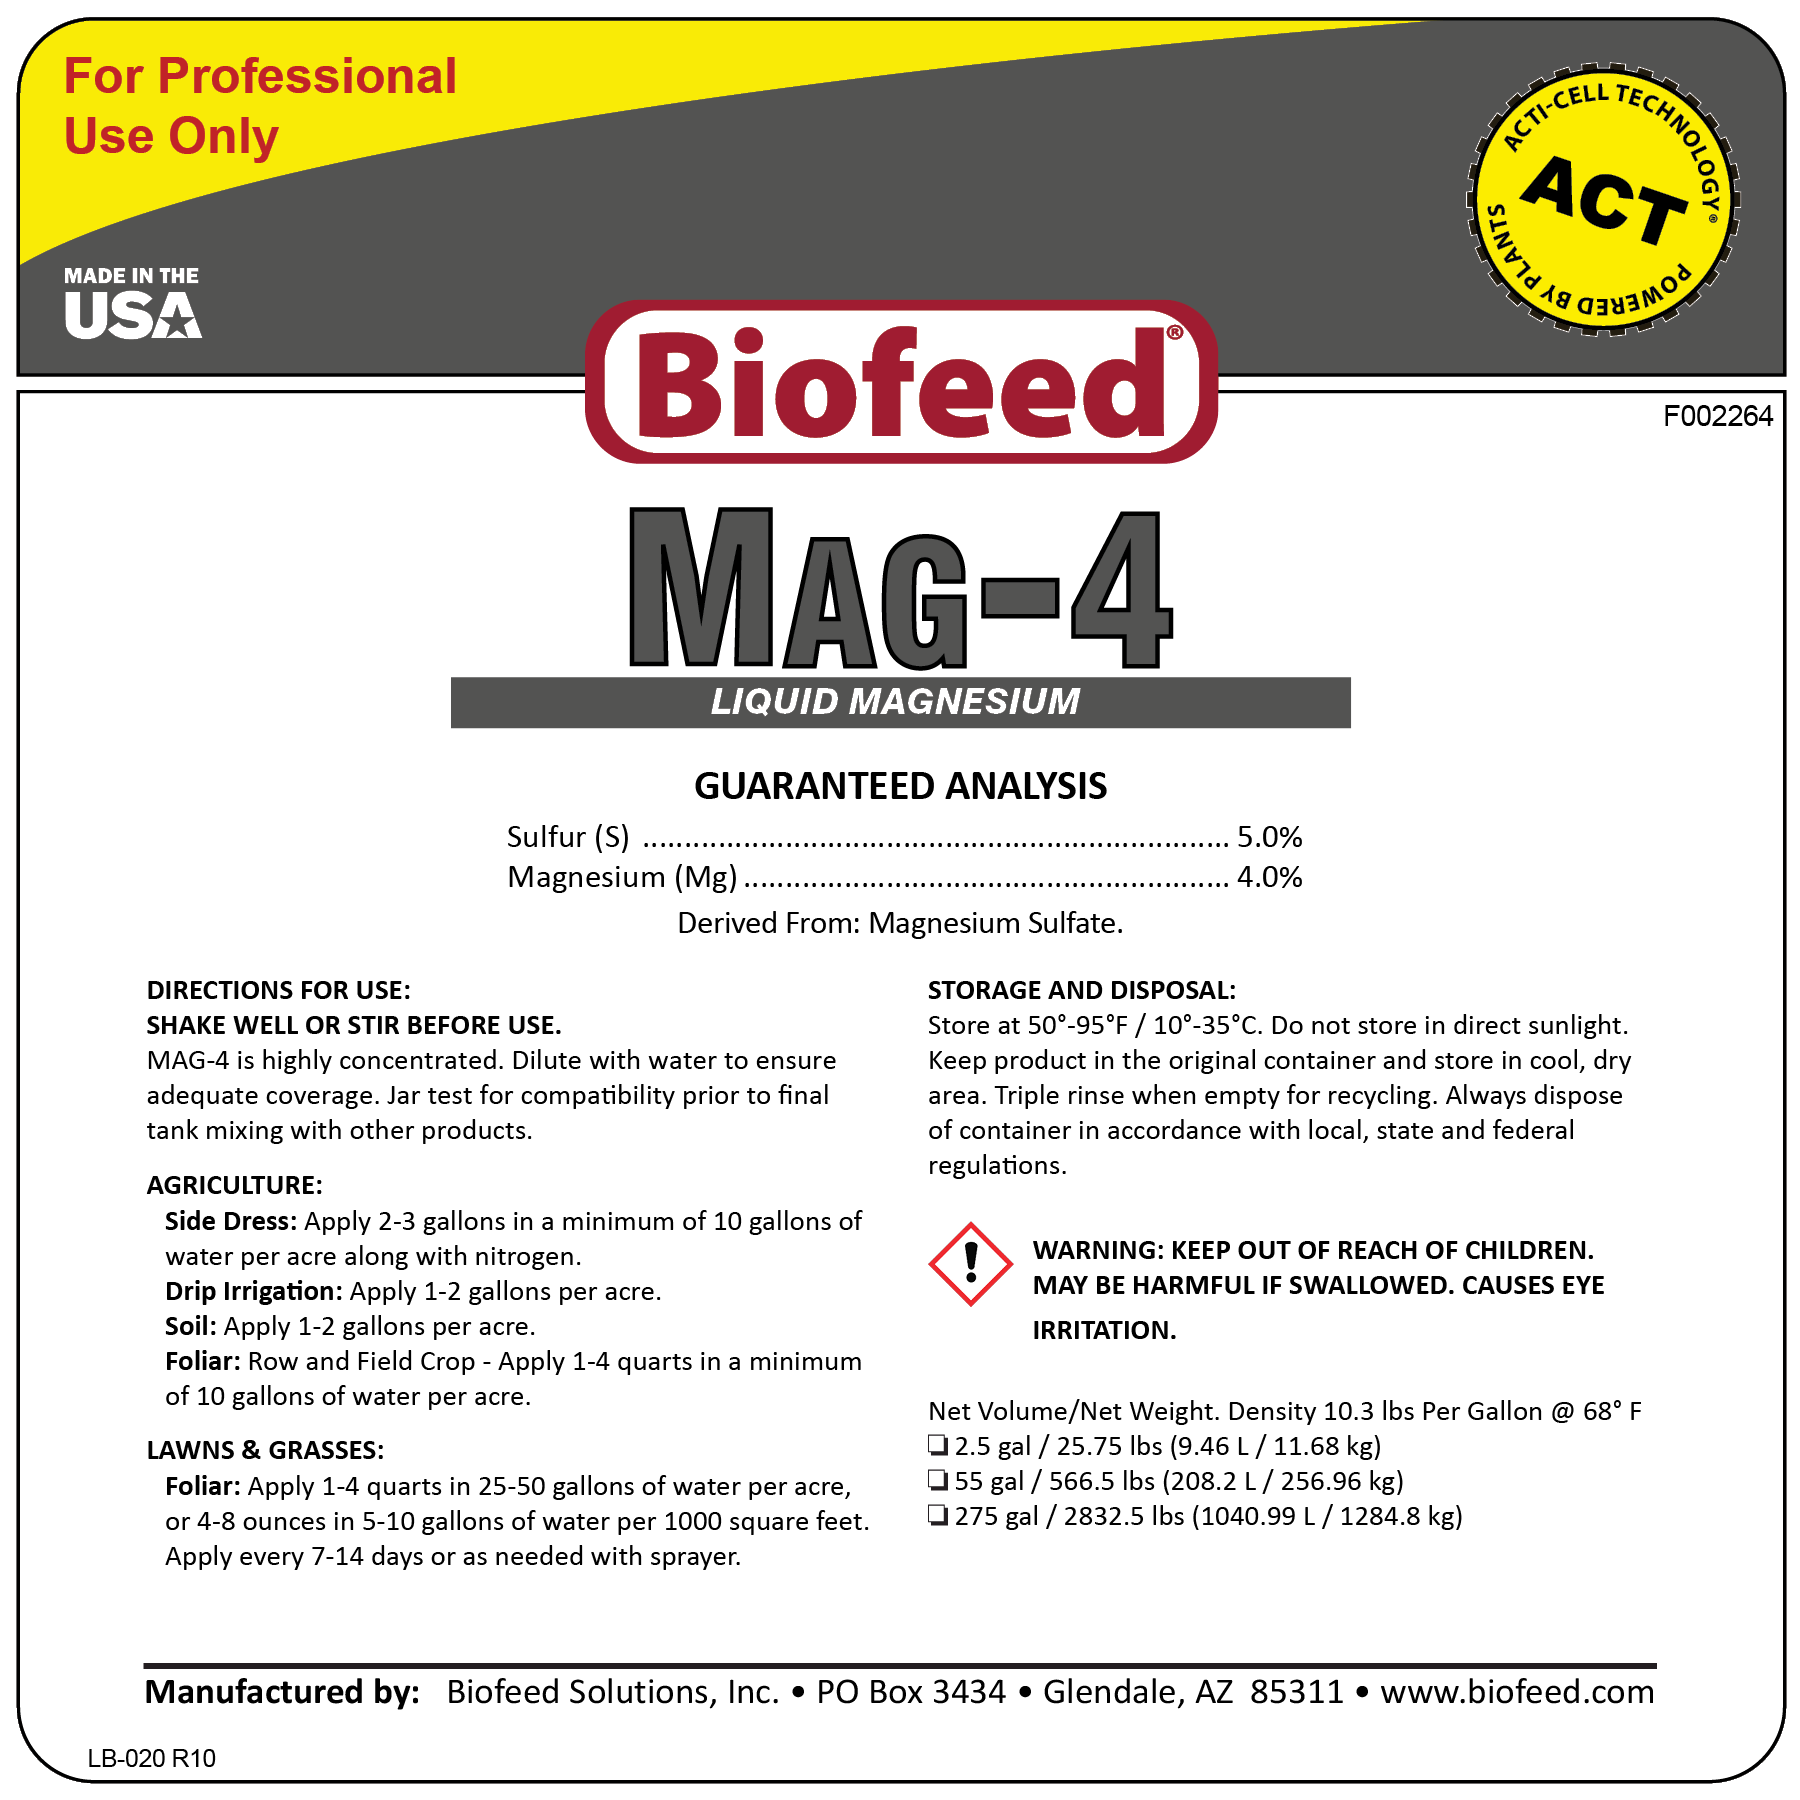 MAG-4 Liquid Magnesium